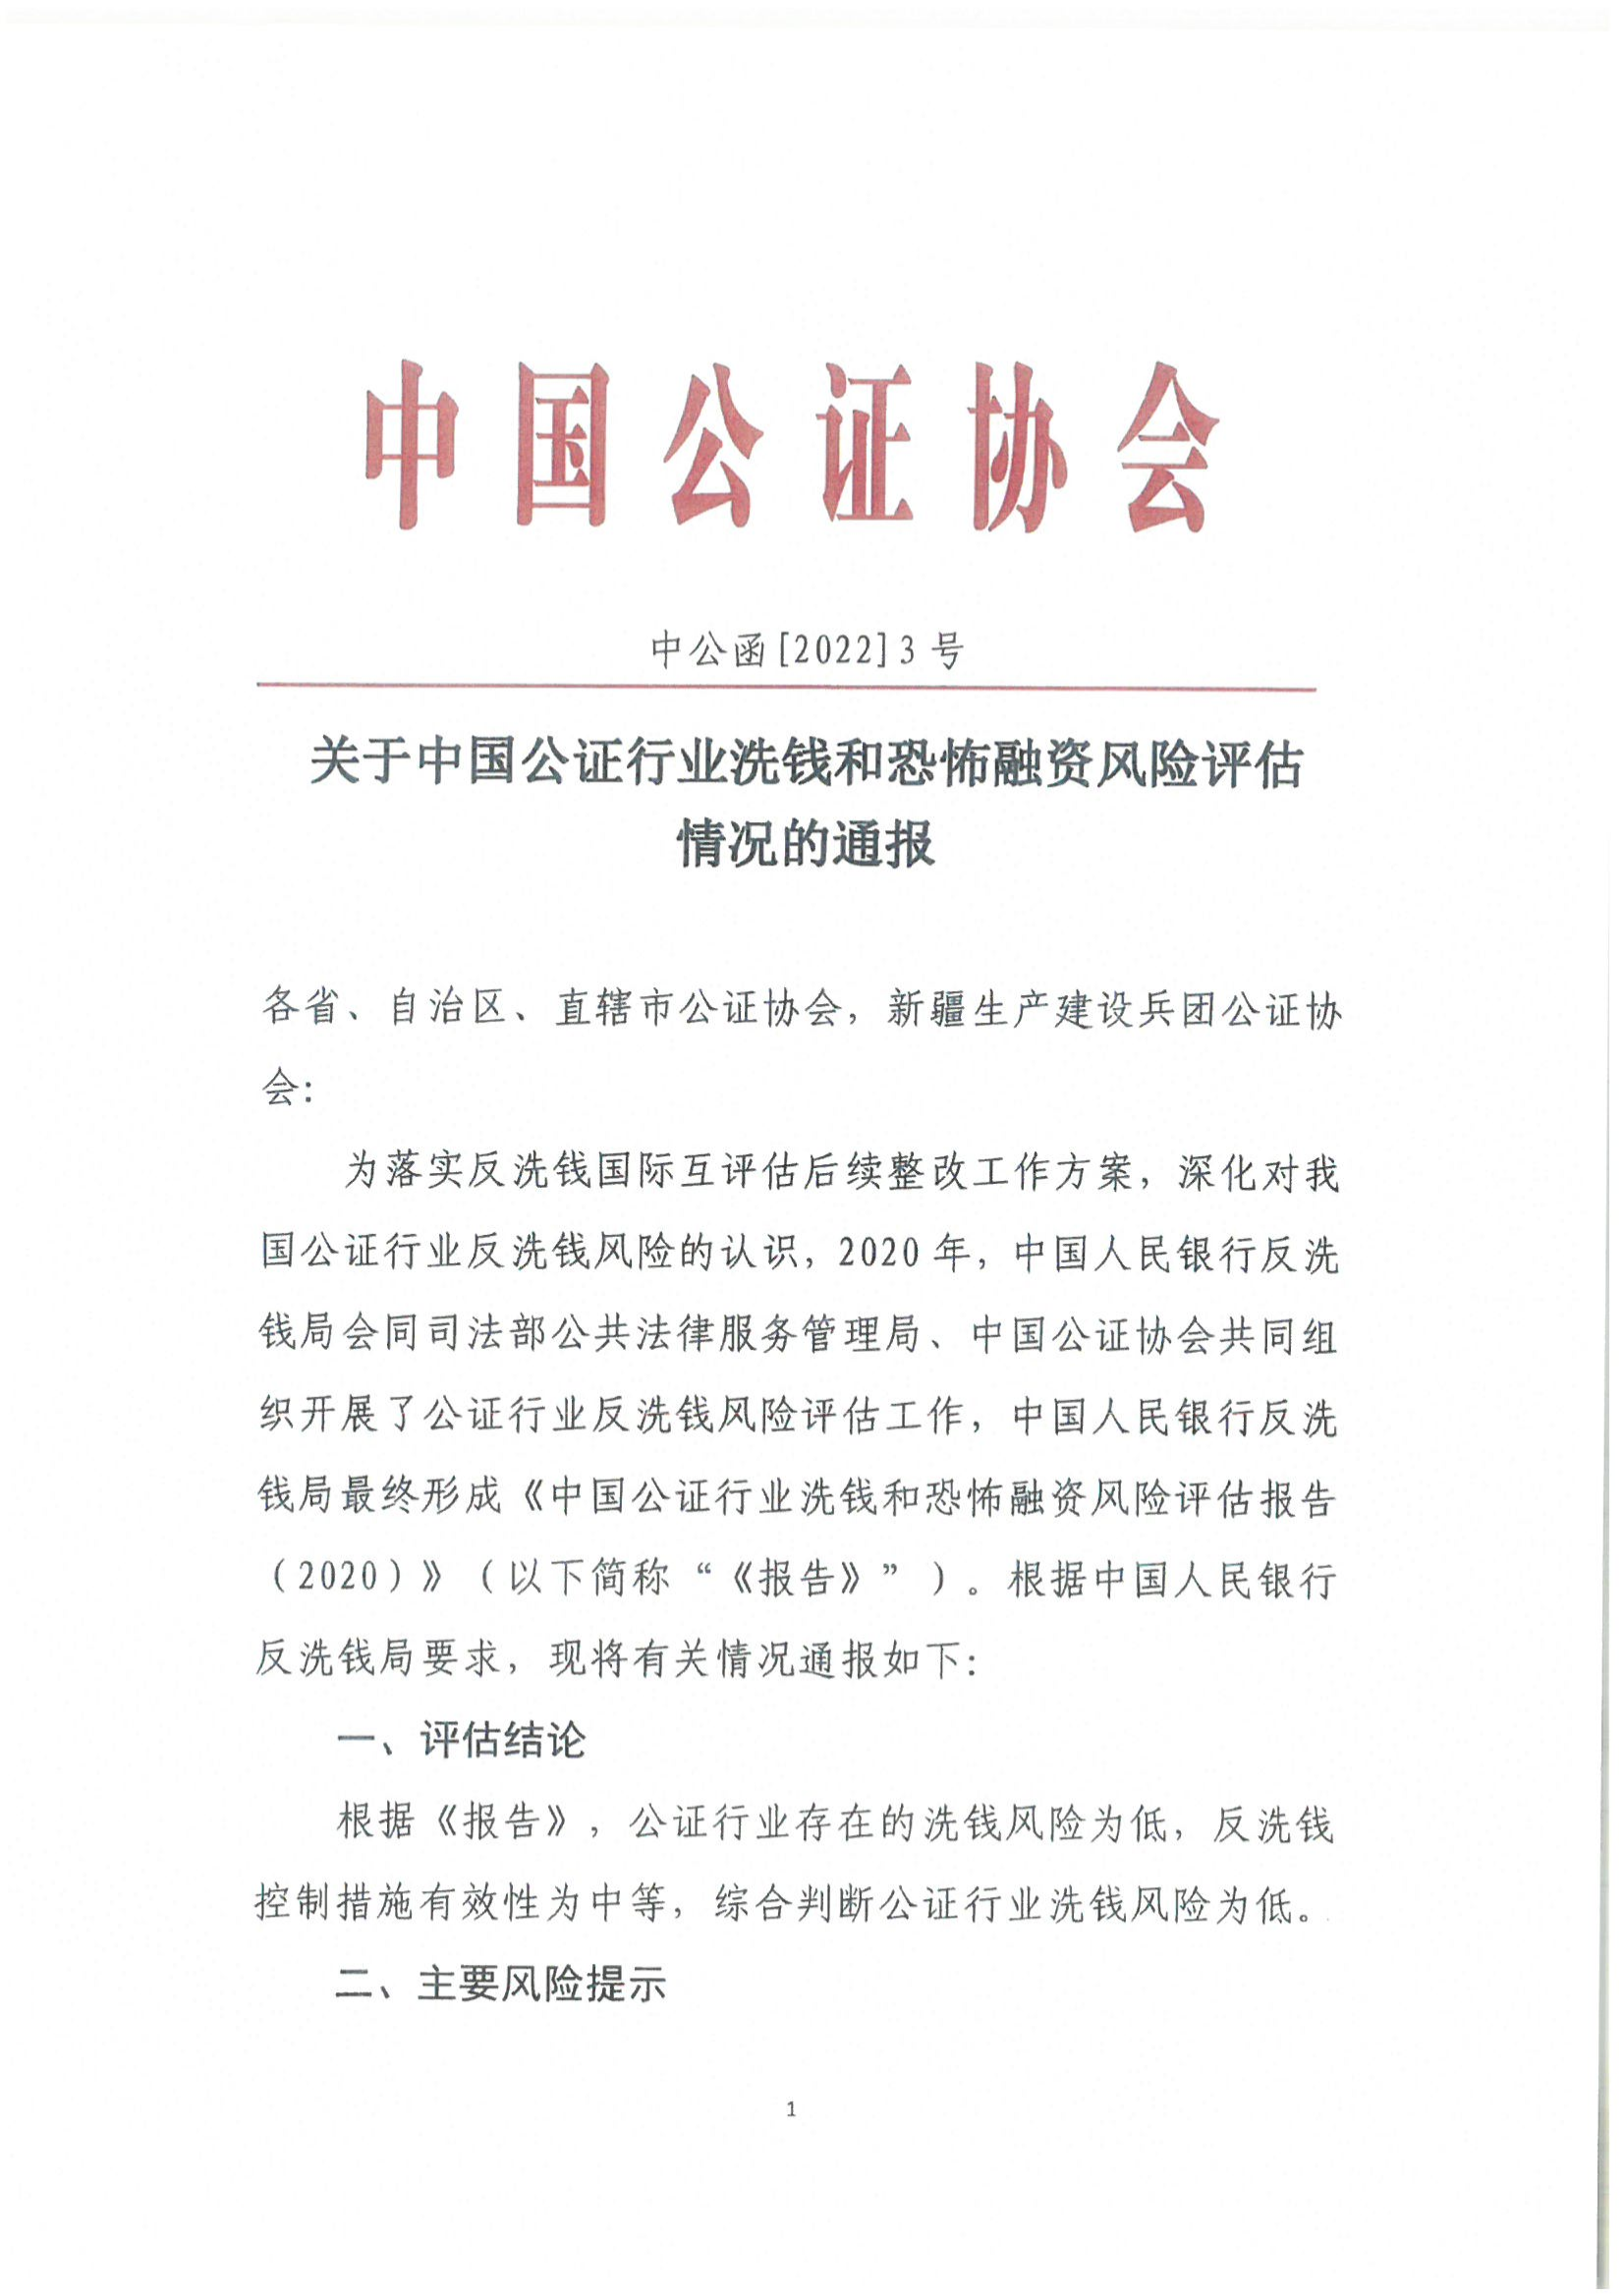 京公协字【2021】1号 关于中国公证行业洗钱和恐怖融资风险评估情况的通报_02